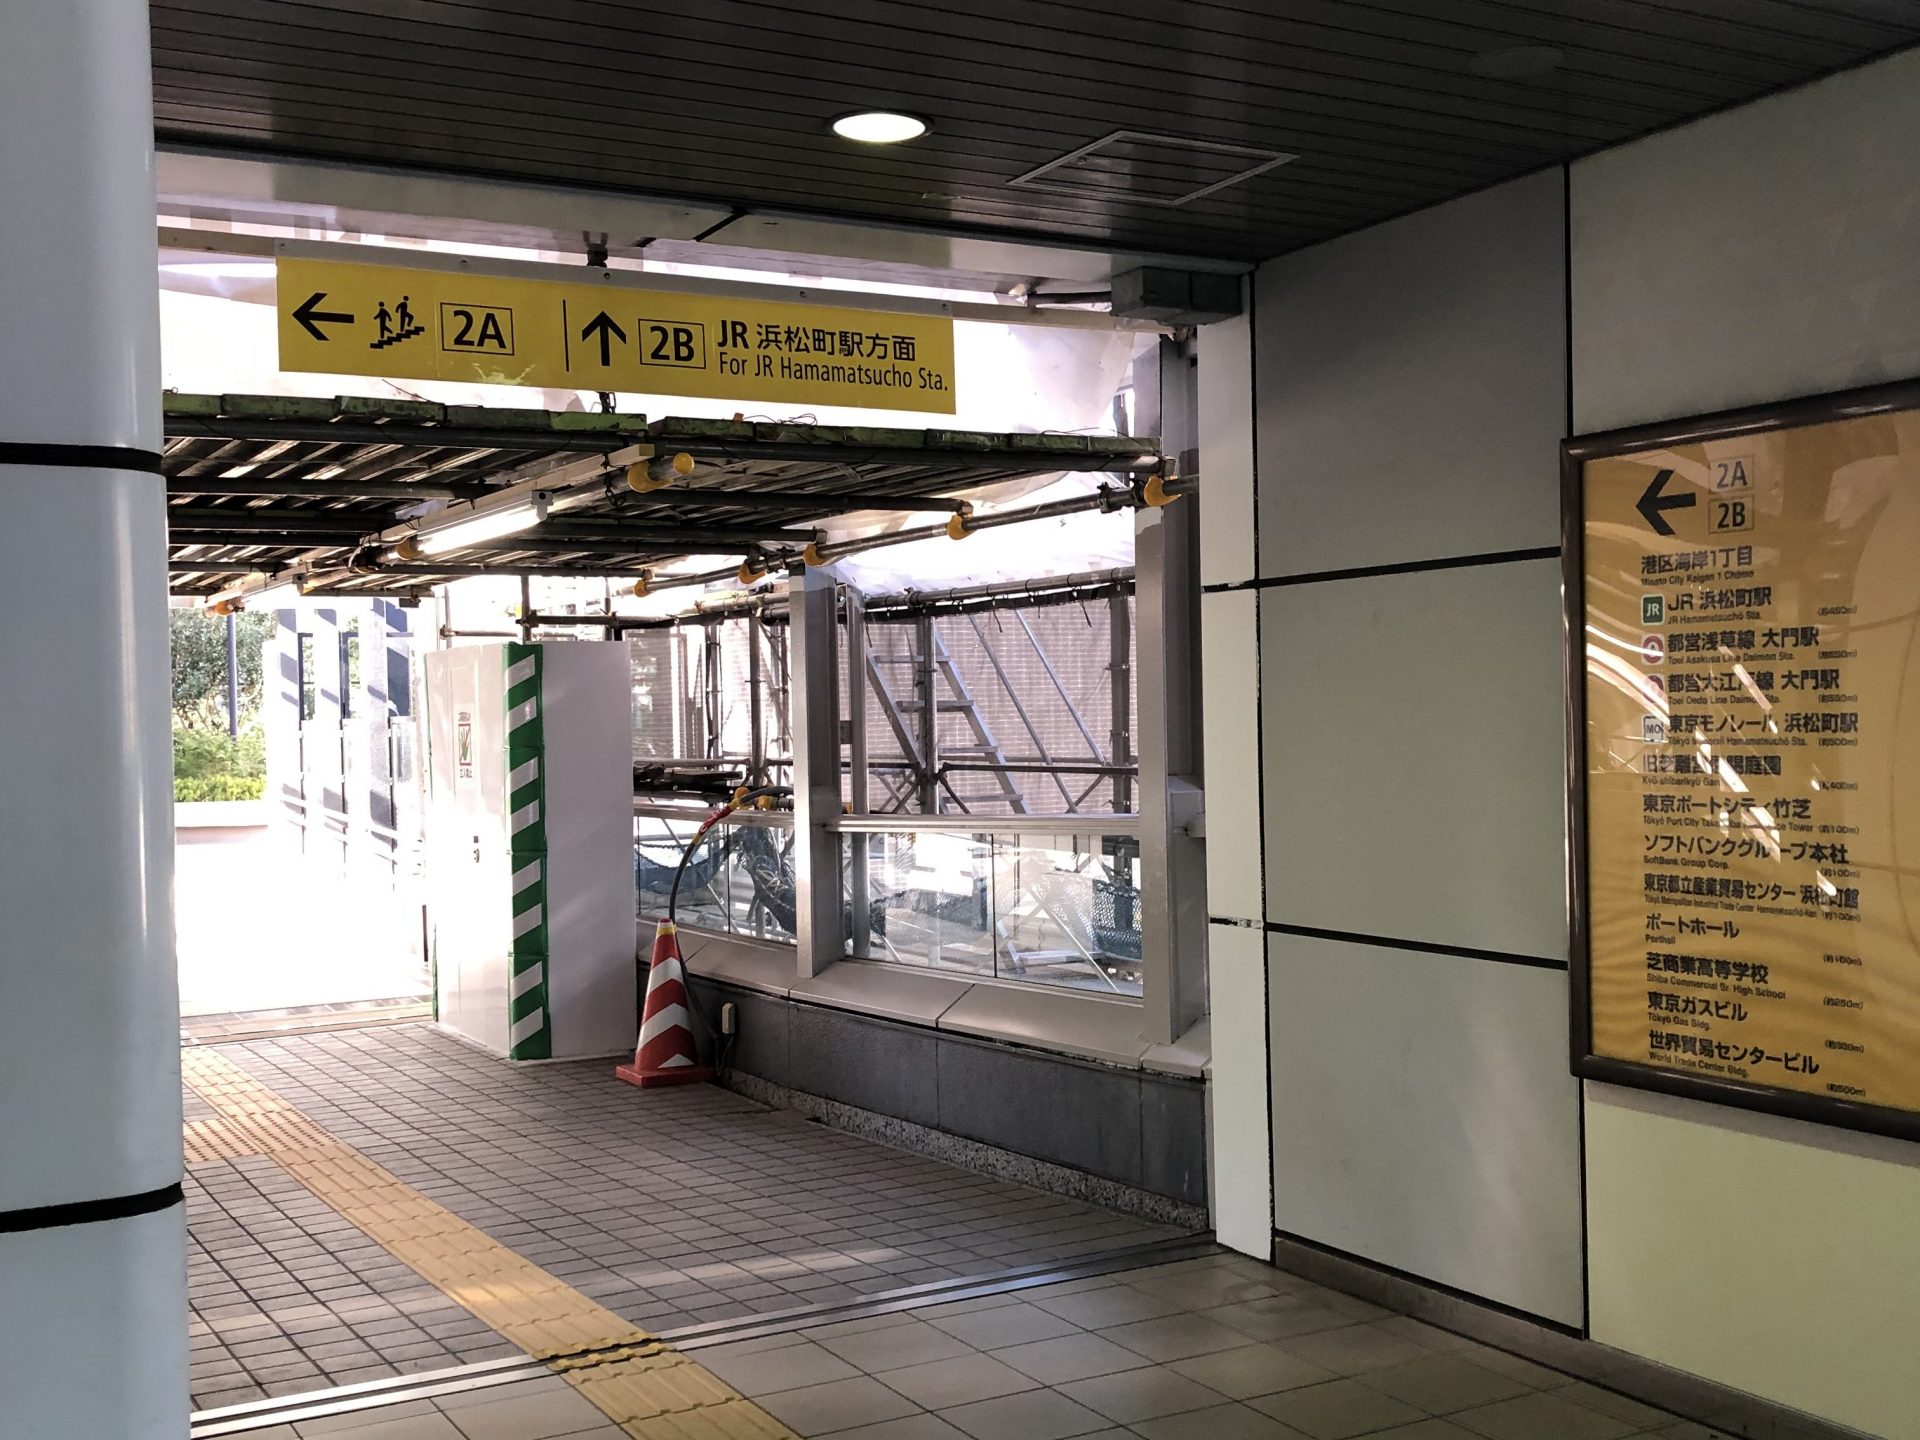 ビジネスエアポート竹芝 改札を出て左の「JR浜松町駅方面2B出口」に進む